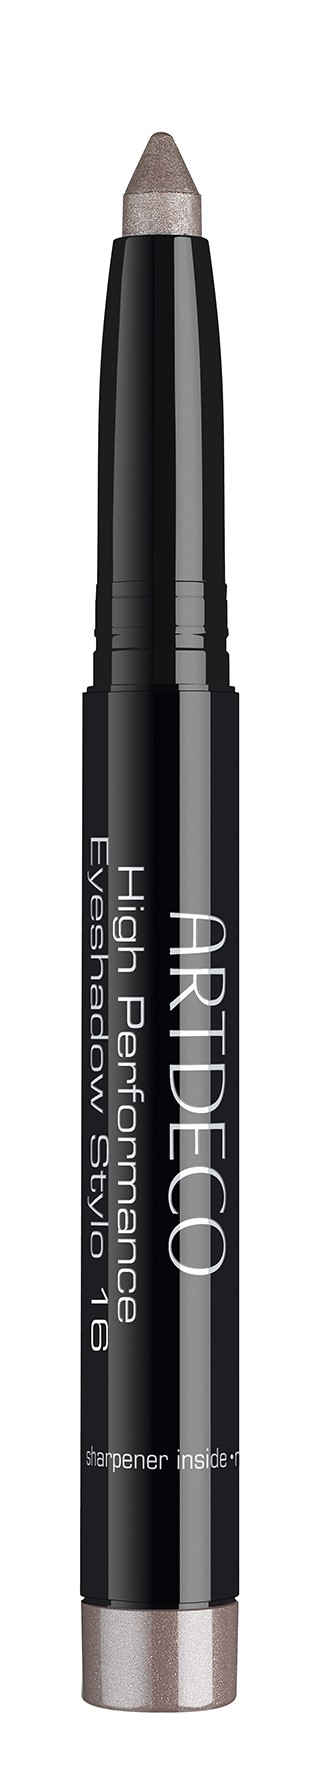 High performance eye shadow stylo #16 Pearl brown  - kopie